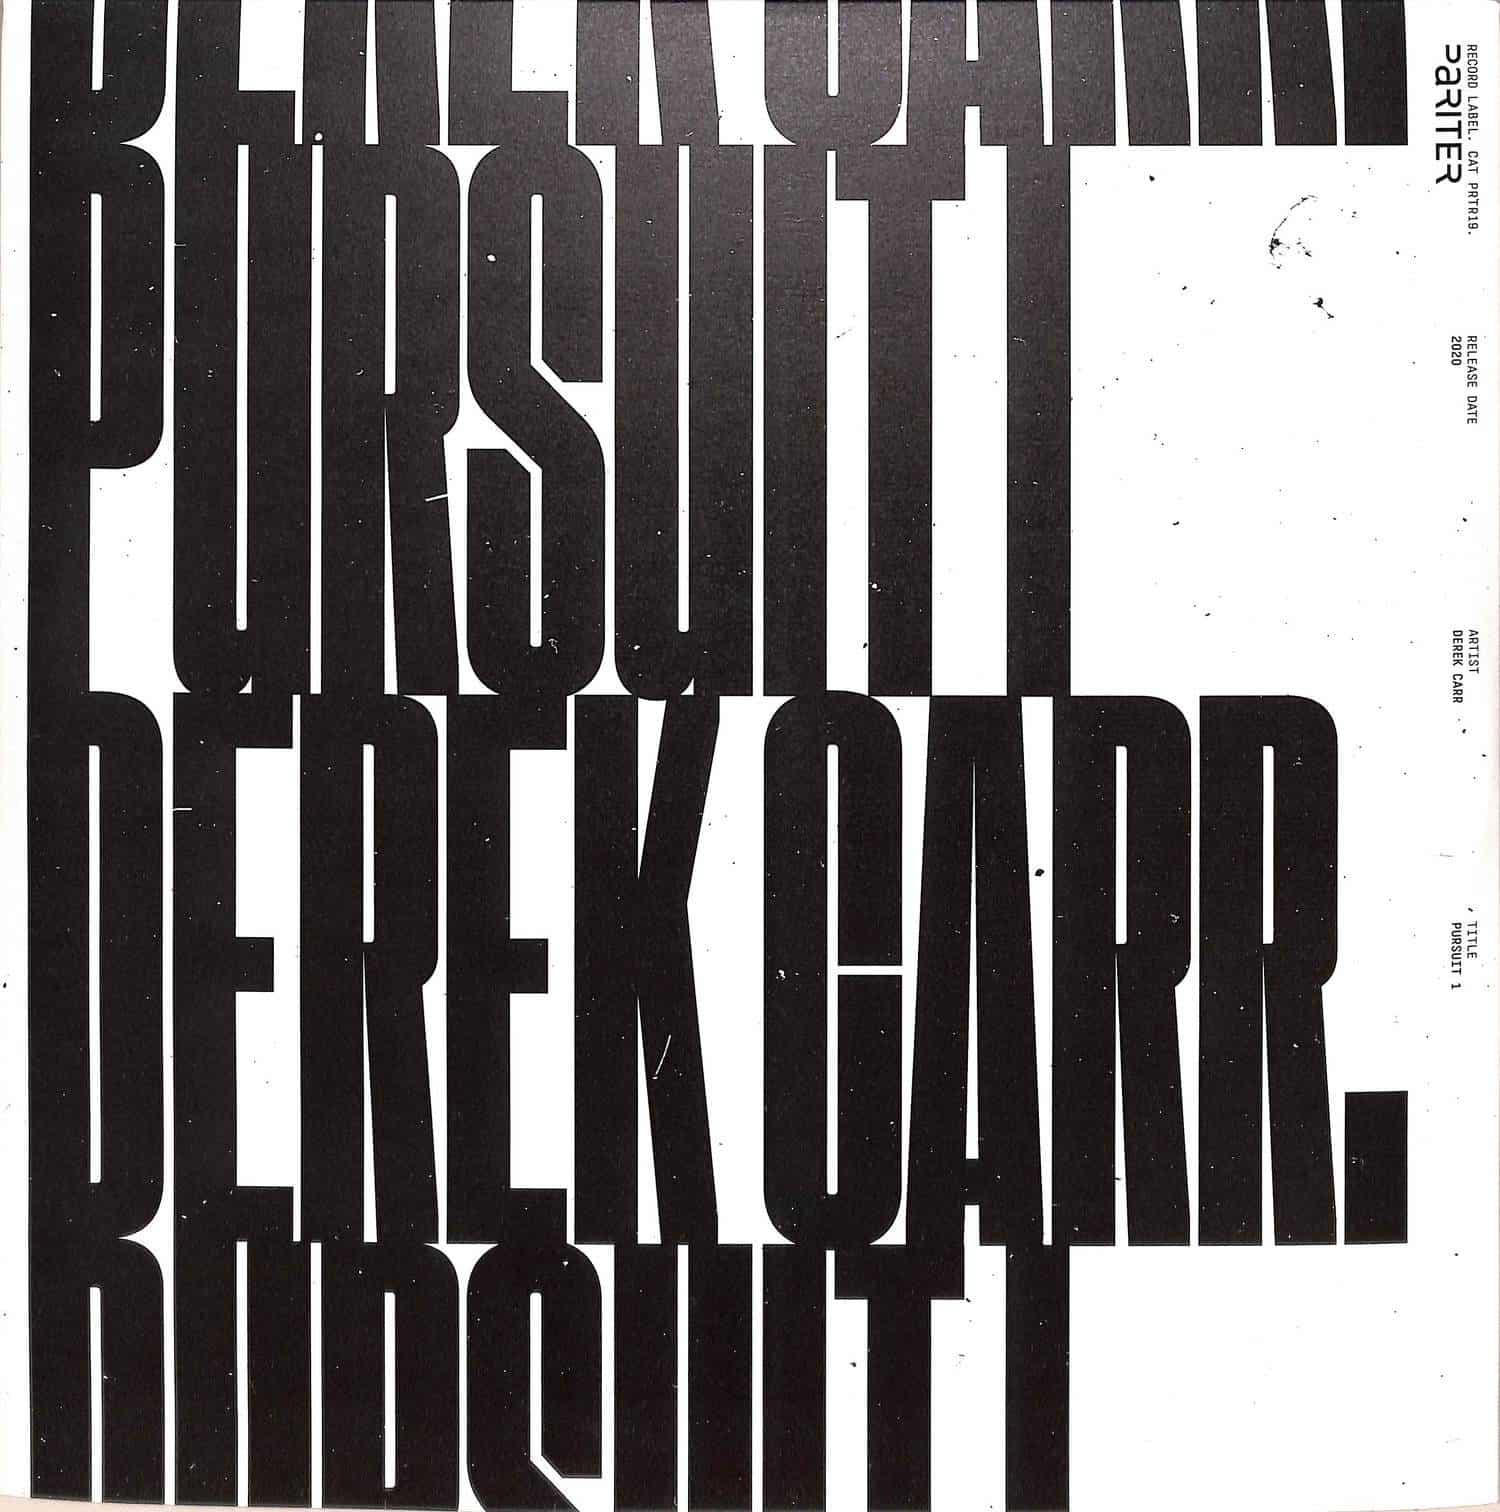 Derek Carr - PURSUIT PART 1 